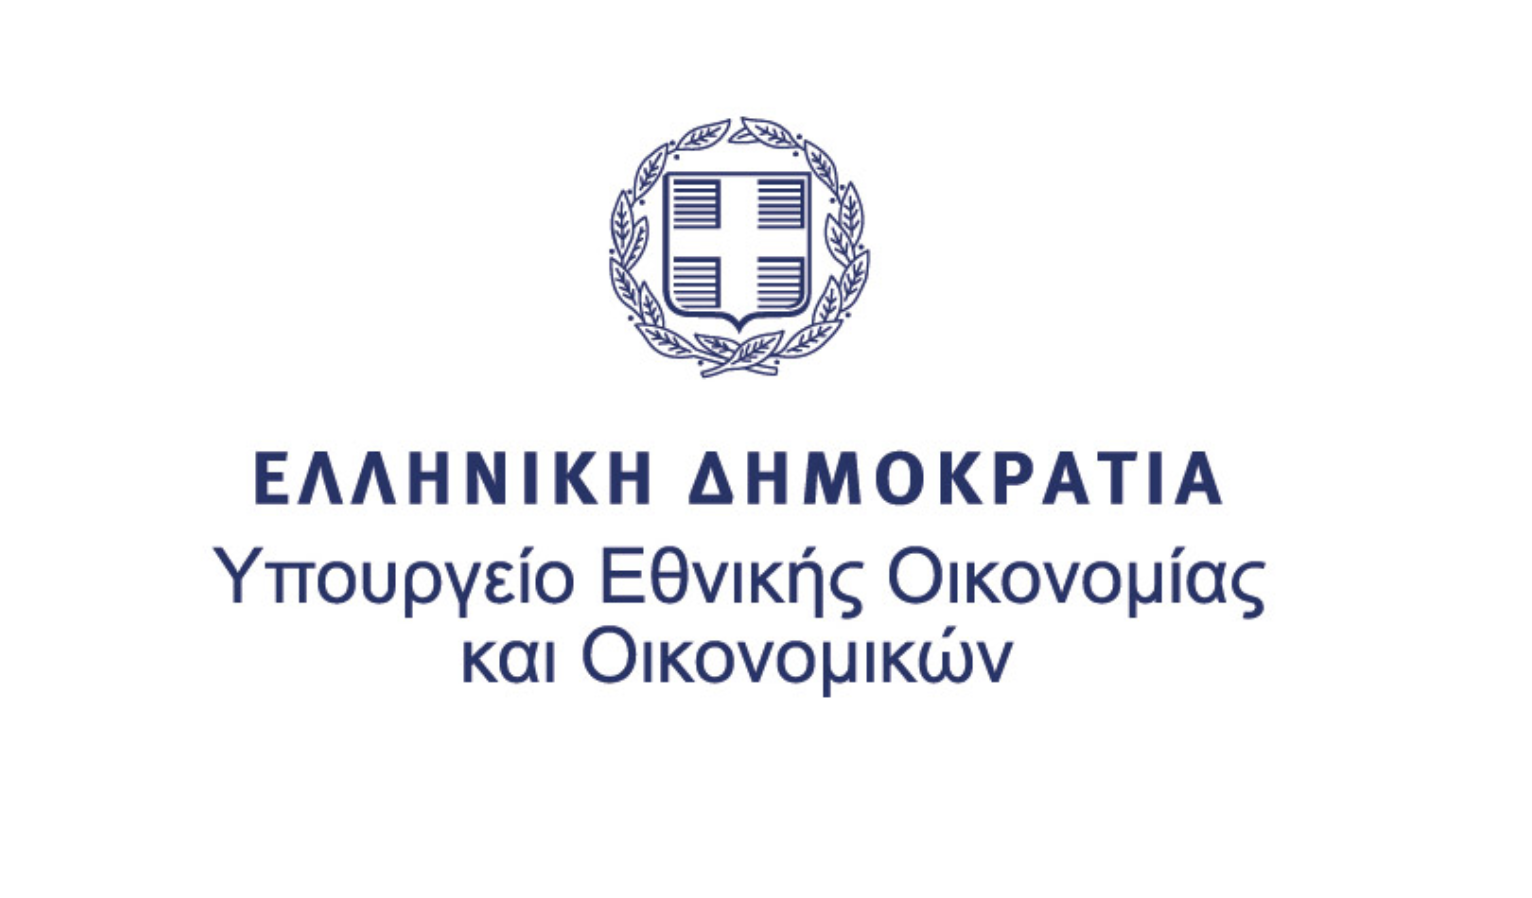 Ένταξη έργου για κοινωνική στέγαση των πλέον ευάλωτων ομάδων του Δήμου Αθηναίων στο Ταμείο Ανάκαμψης